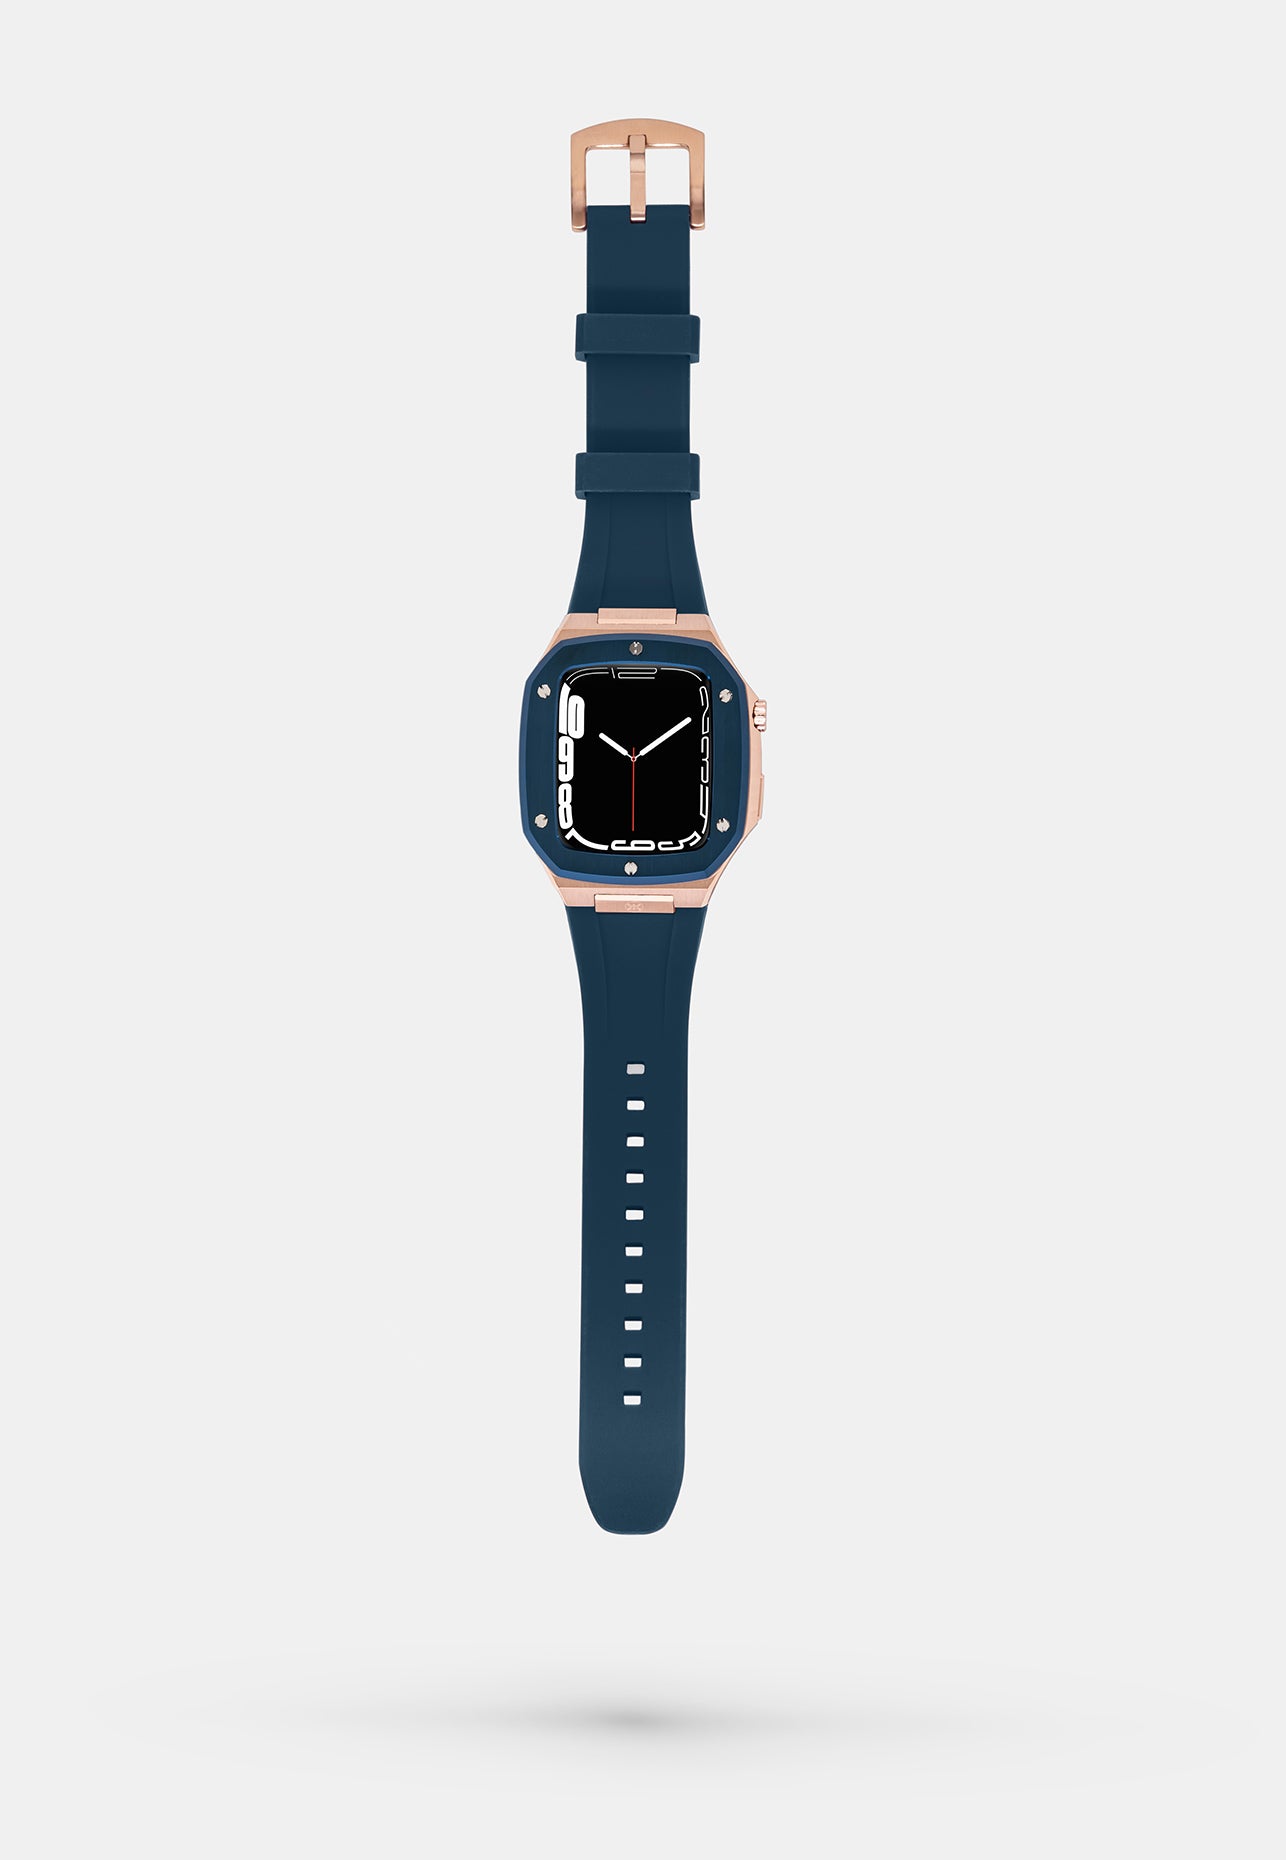 Offshore Blue - Accessoire Apple Watch - Coque Etui Bleu avec lunette de la Montre en Or Bracelet Bleu Appel Watch 44mm ouverte